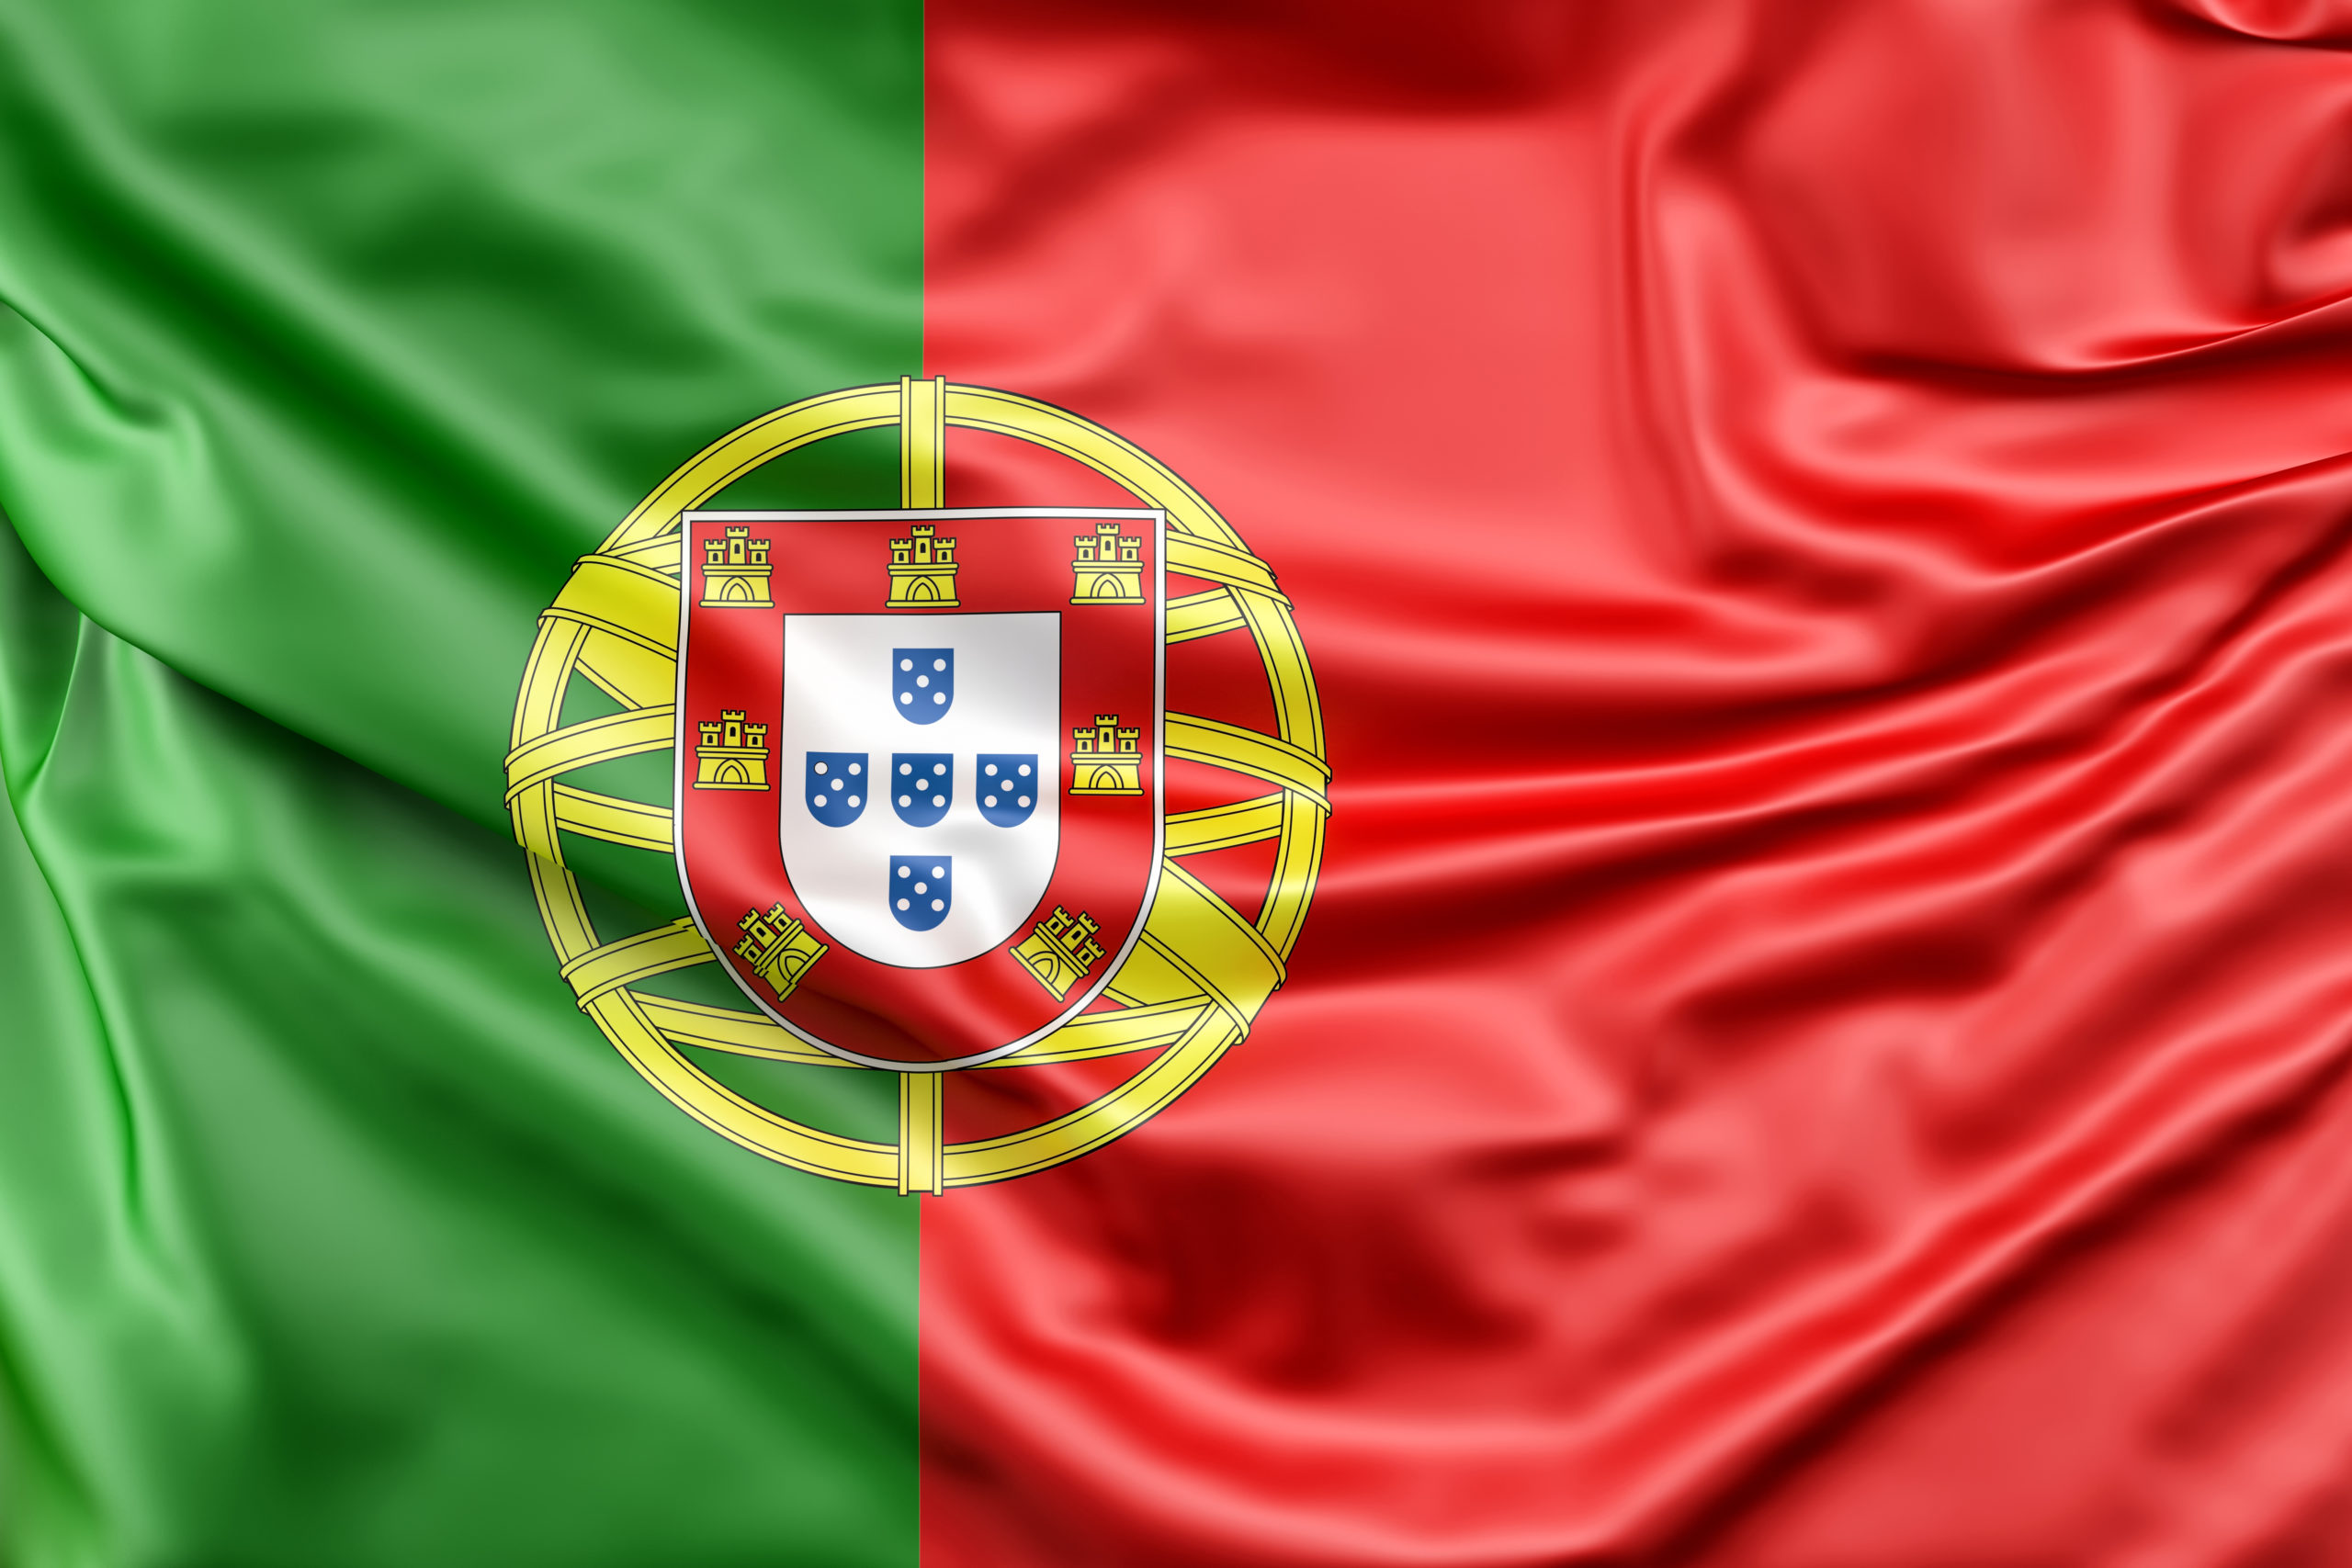 Государственный язык в стране португальский. Флаг Португалии. Portugaliya флаг. Португалия флаг и герб. Флаг Португалии 1936.